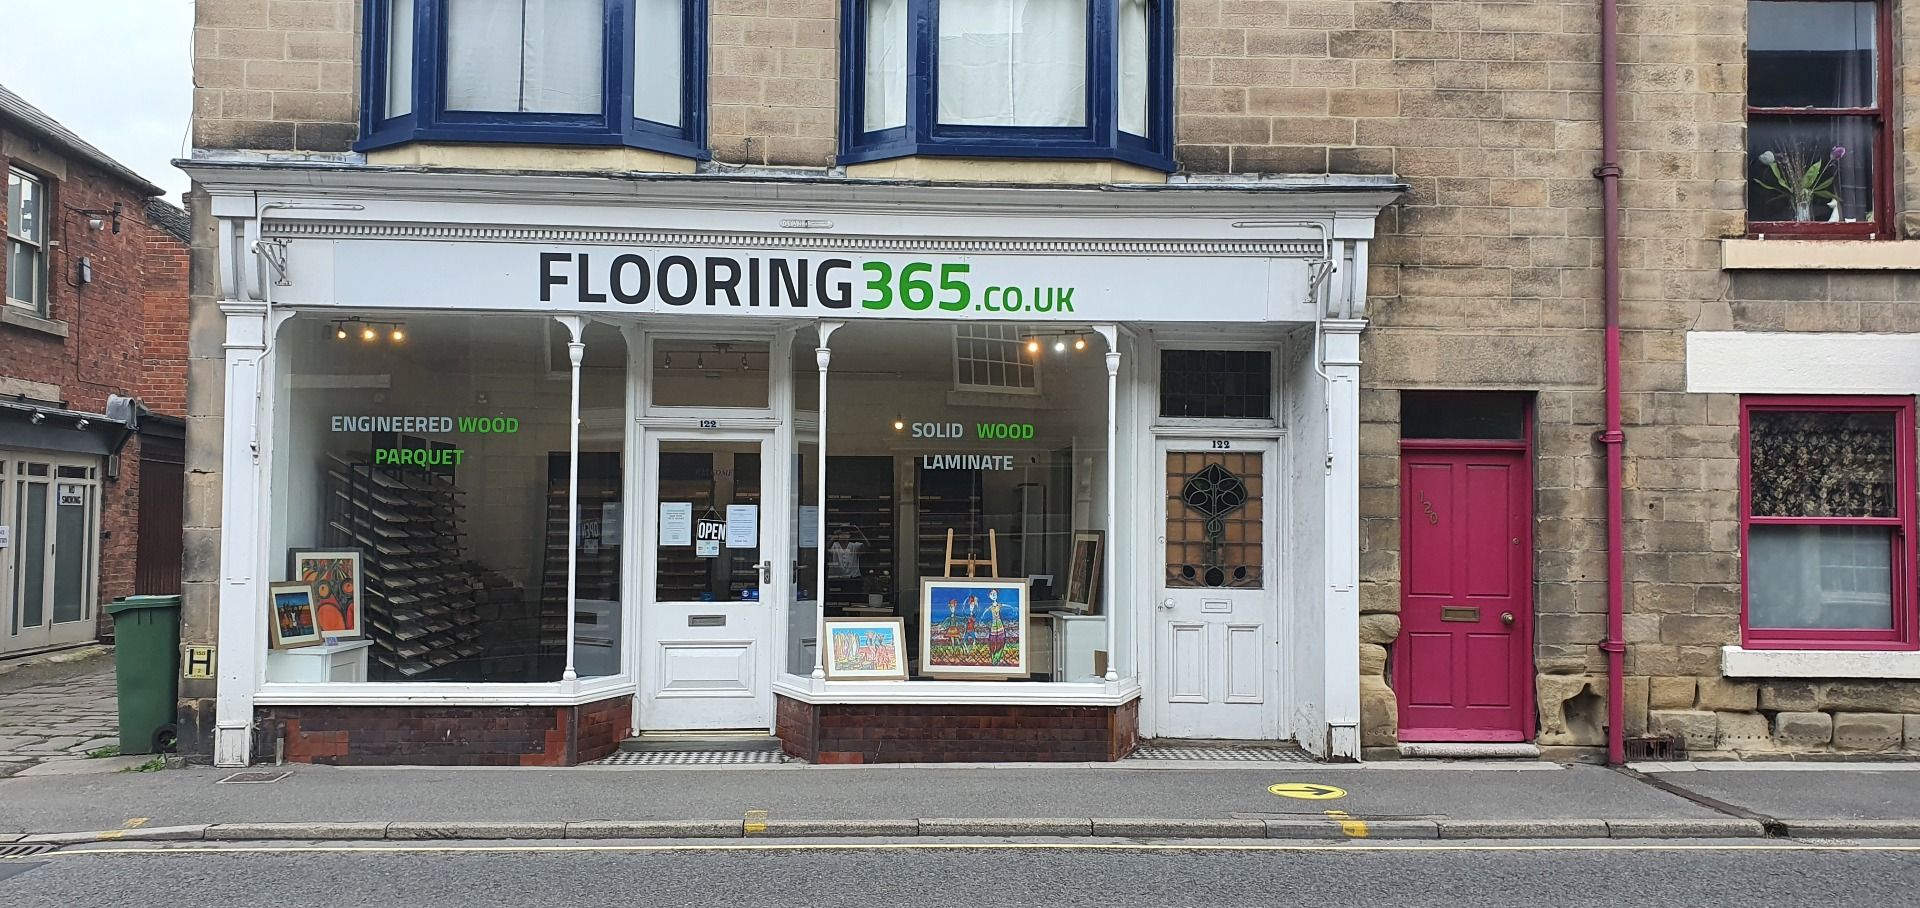 Flooring365.co.uk - Belper Showroom Exterior View